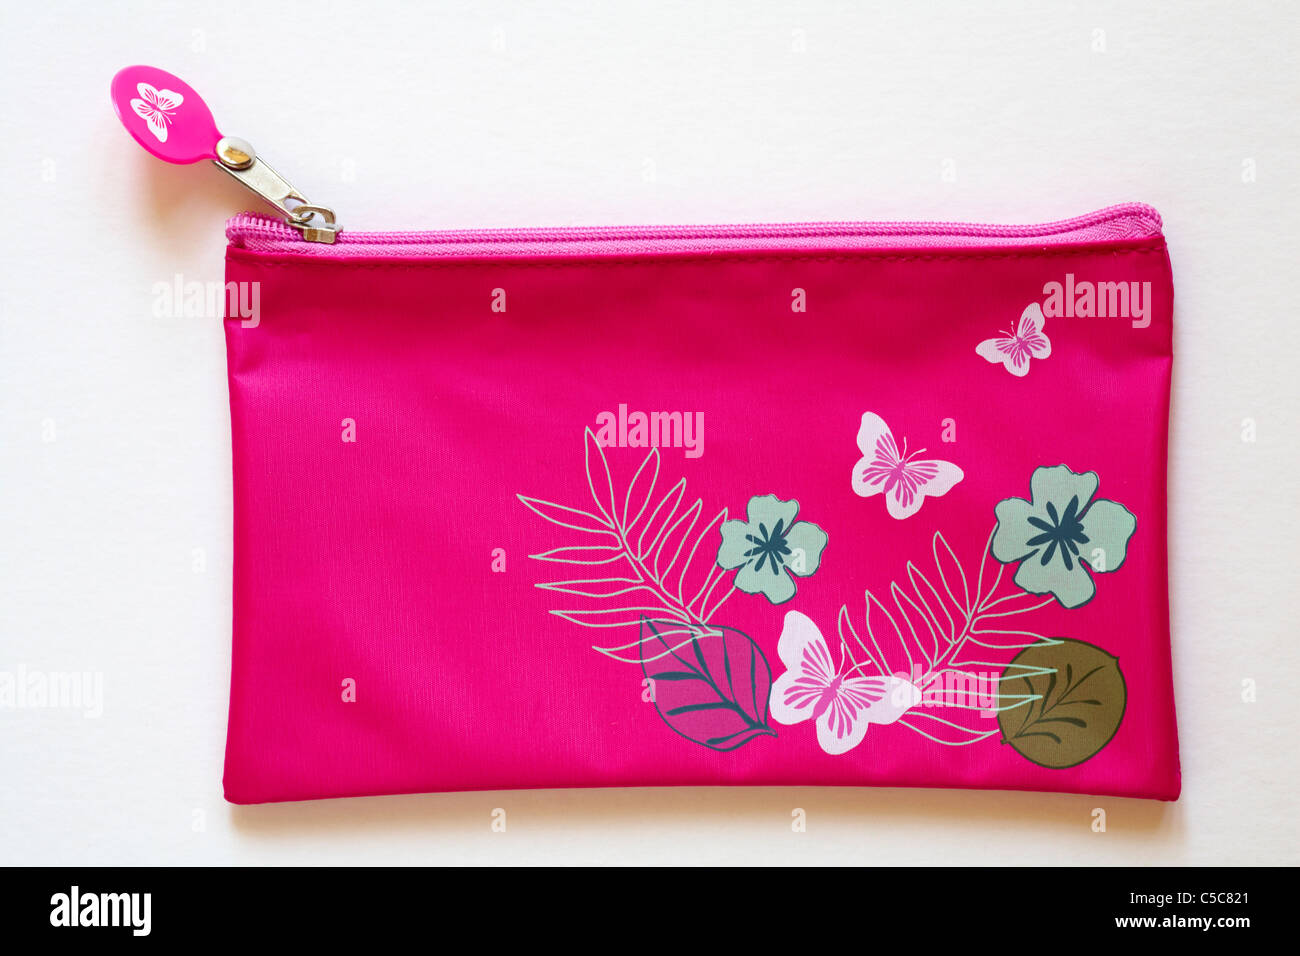 ziemlich pink Etui mit Blumen, Blättern und Schmetterlinge auf isoliert auf  weißem Hintergrund Stockfotografie - Alamy